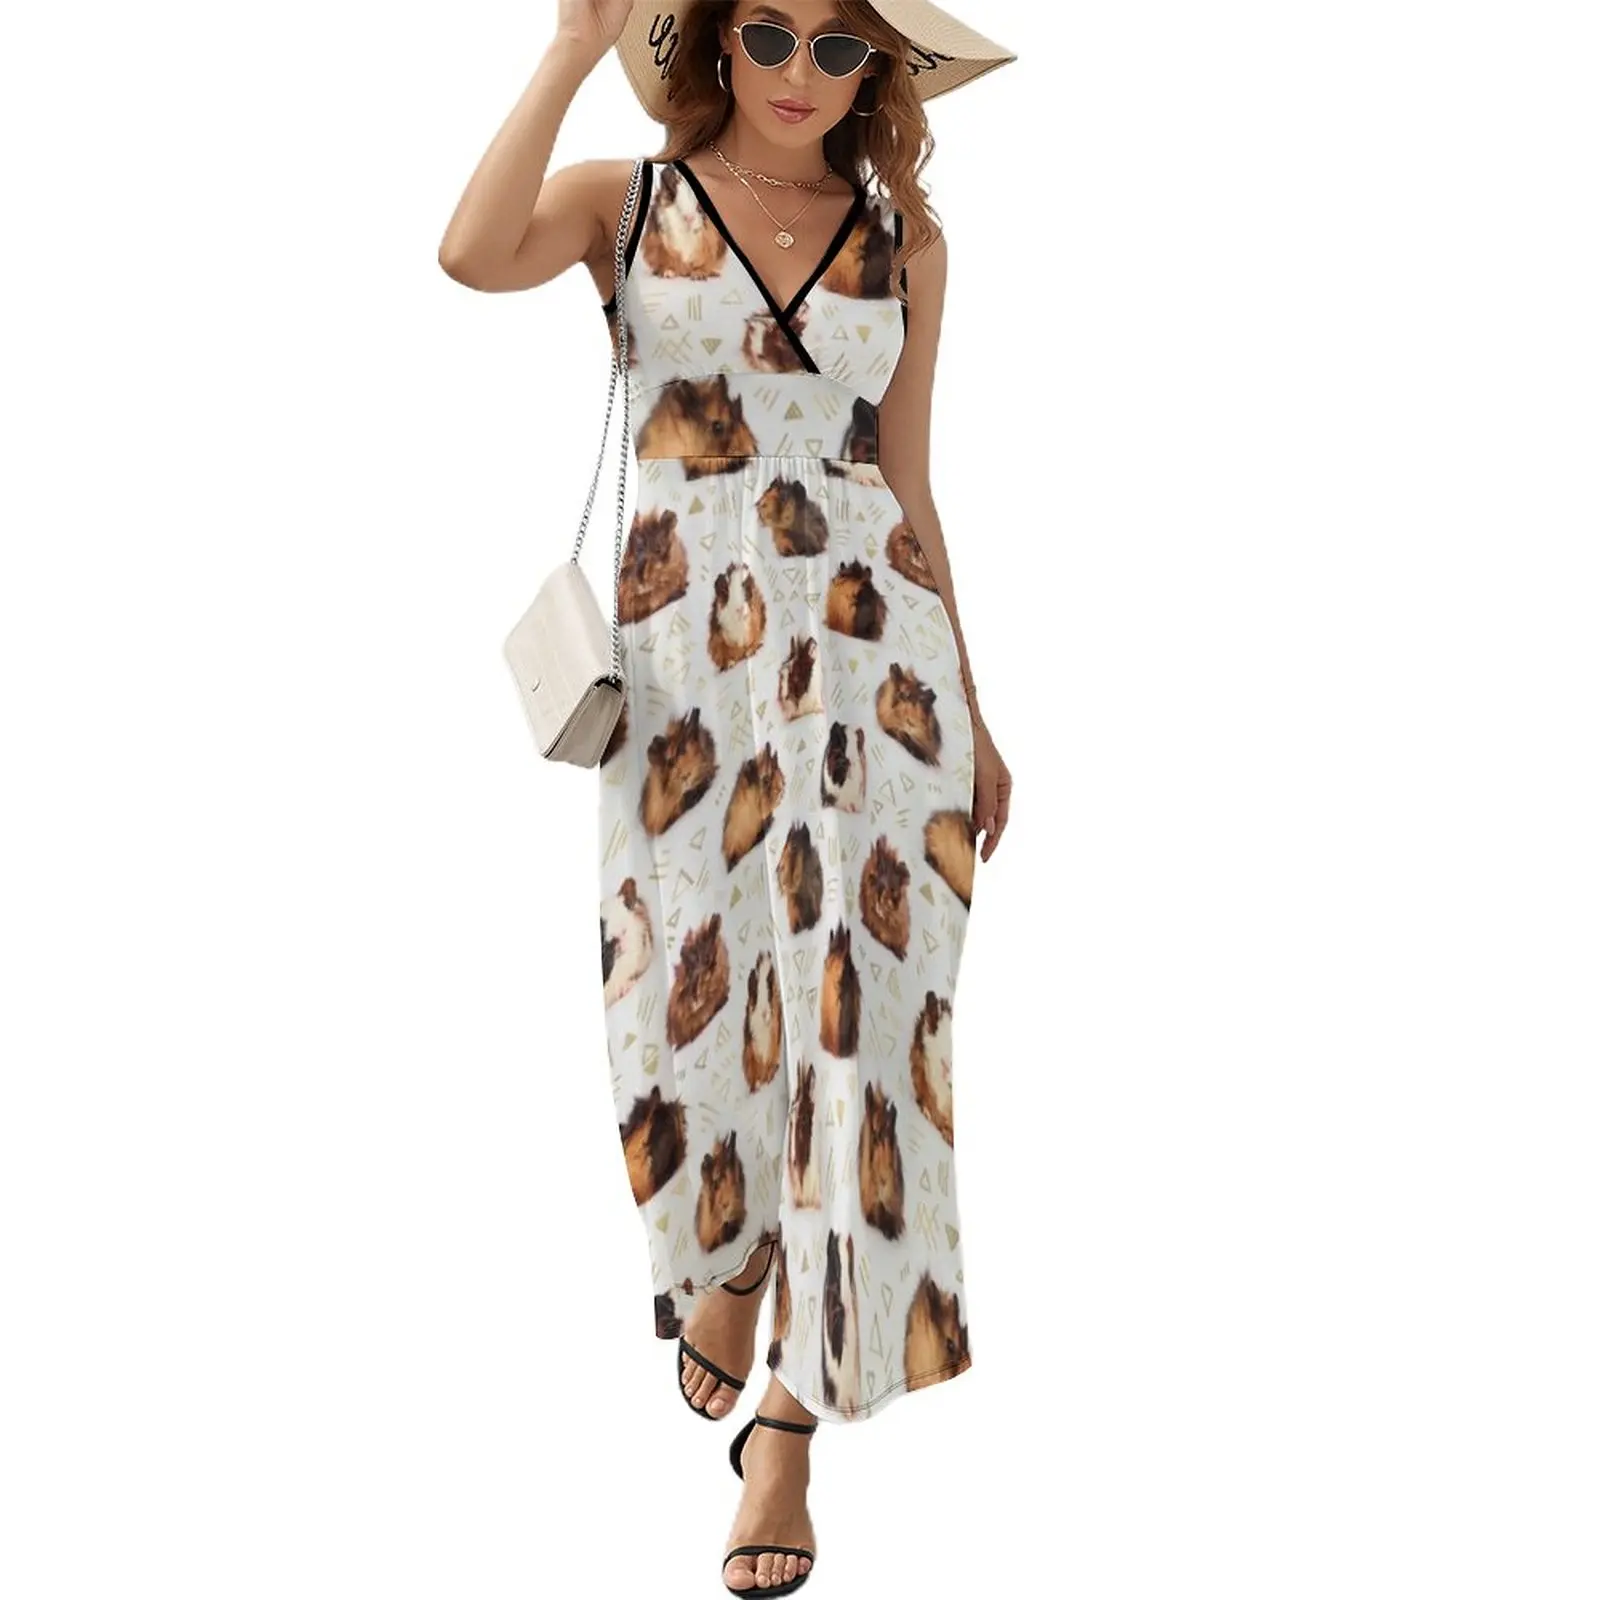 

The Essential Guinea Pig Sleeveless Dress Long dress woman summer dresses dress for women women dresses